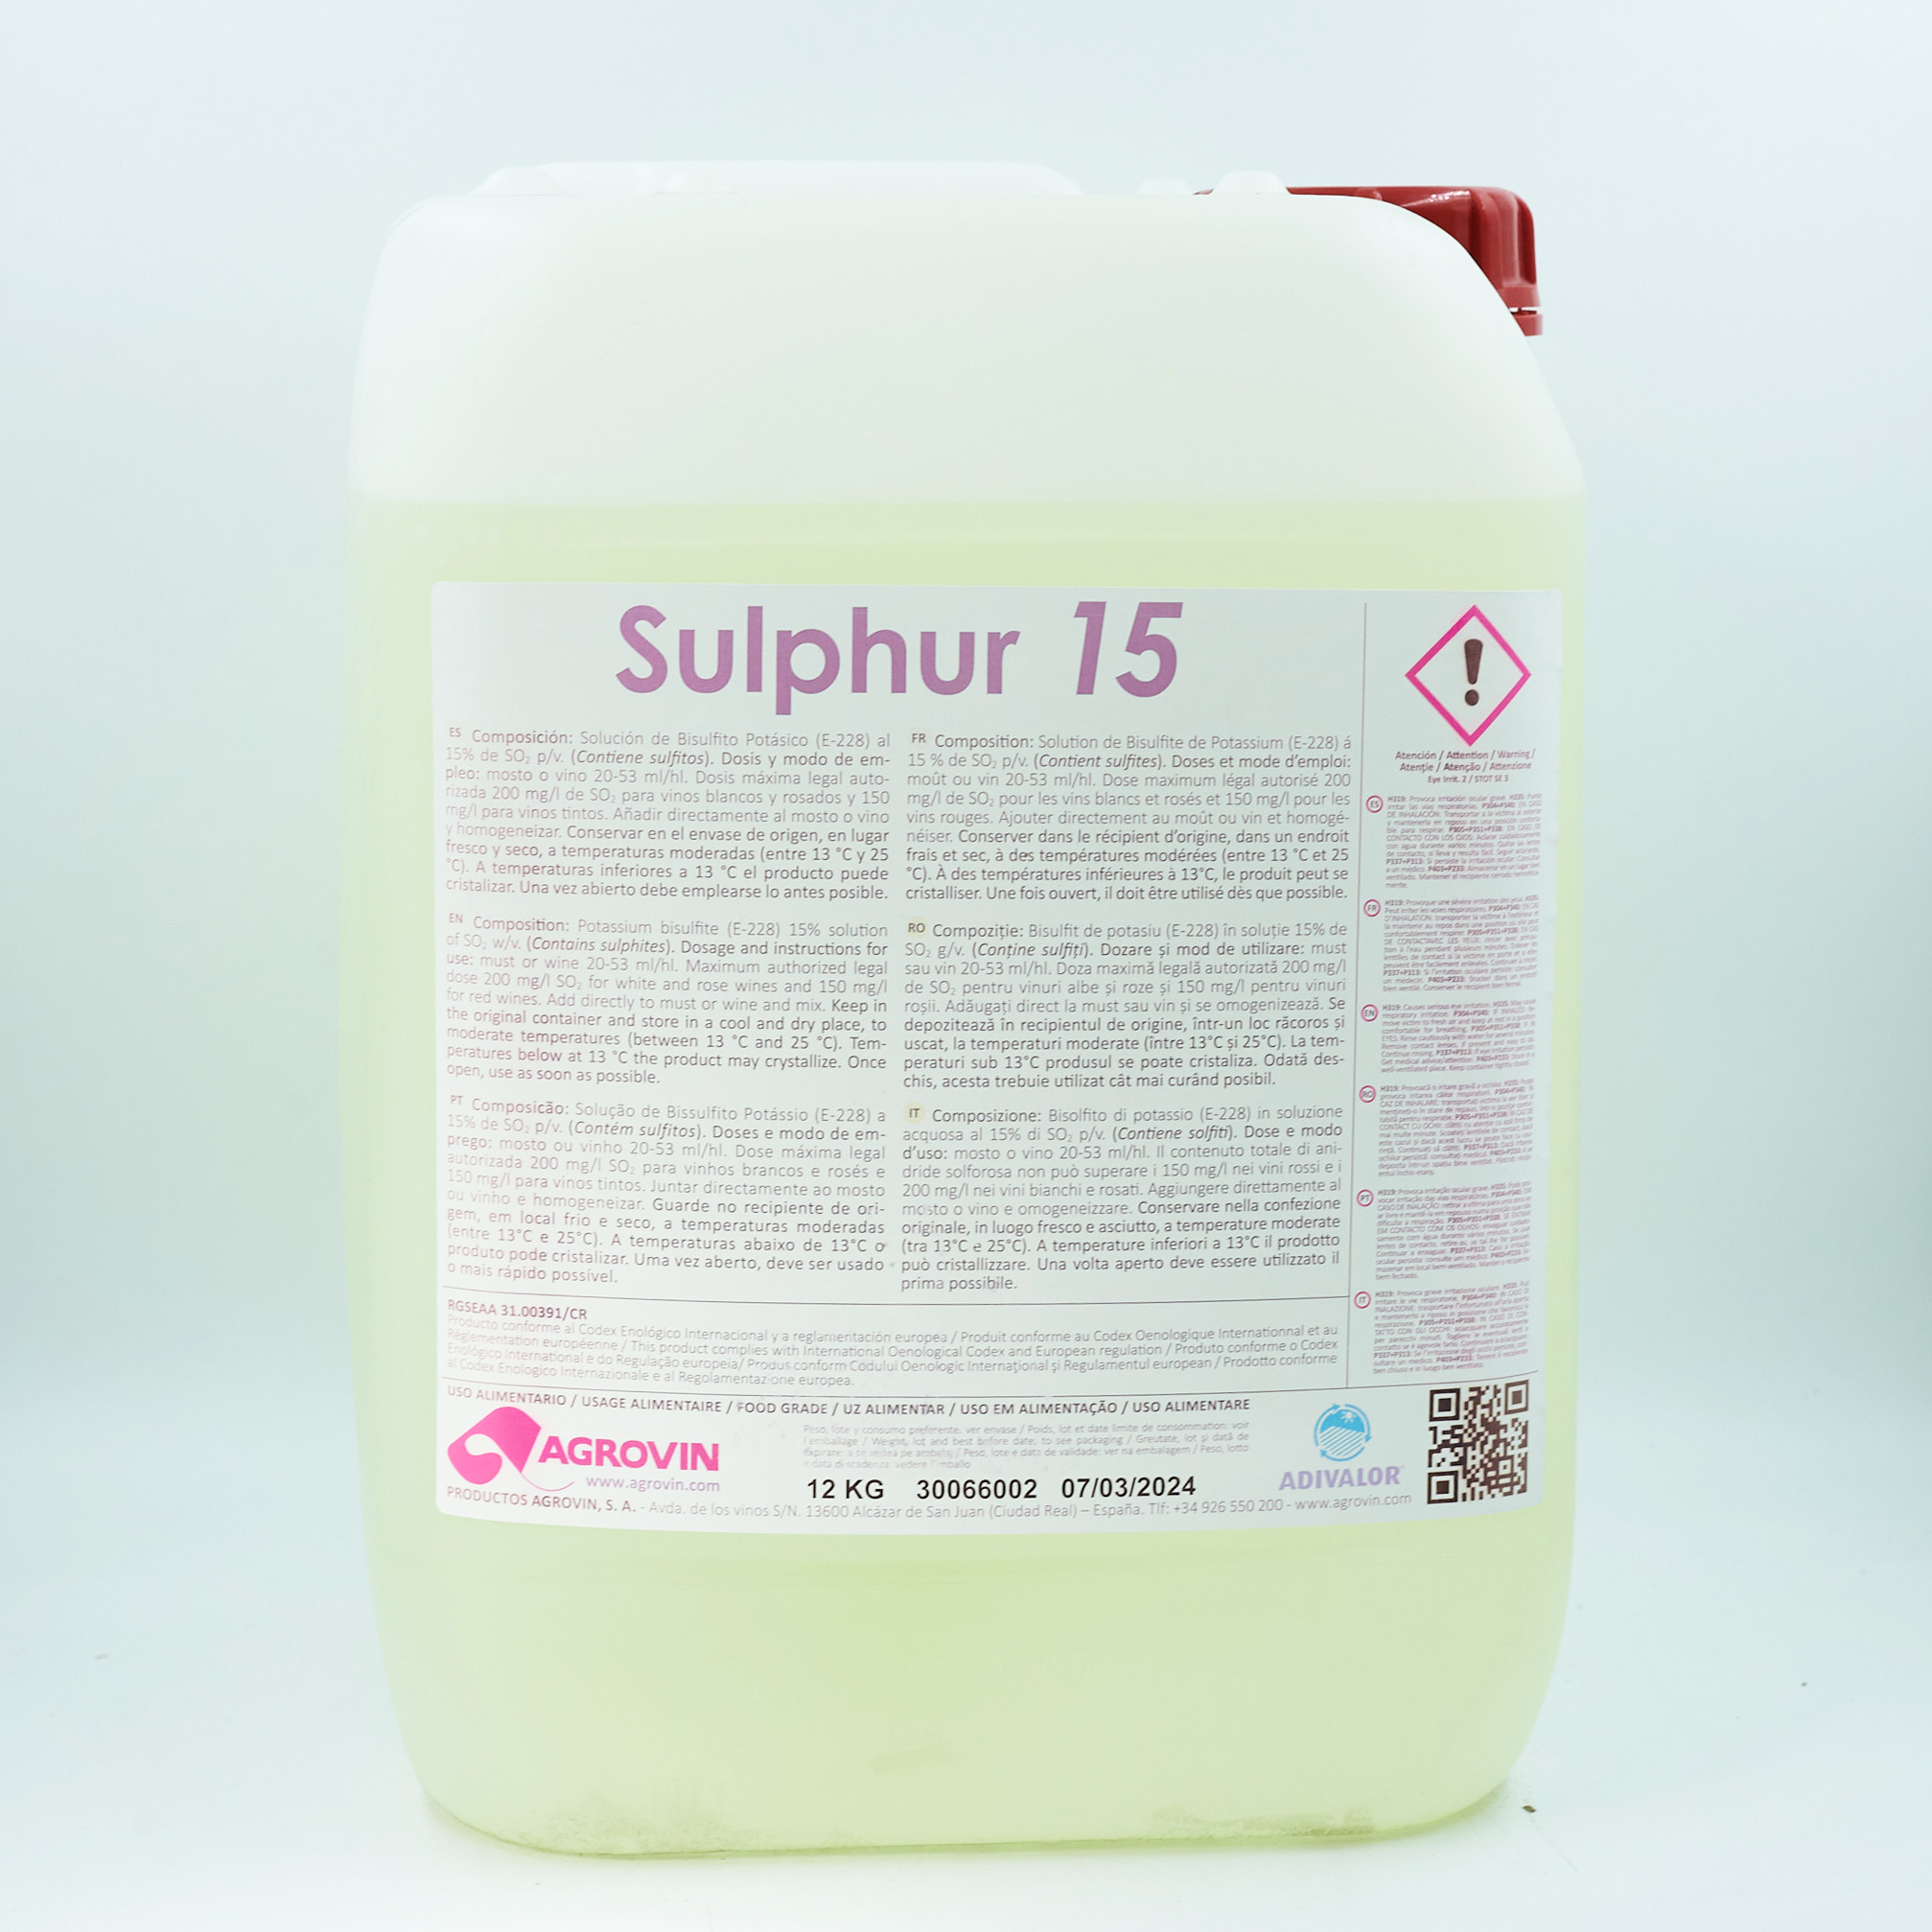 Sulphur 15